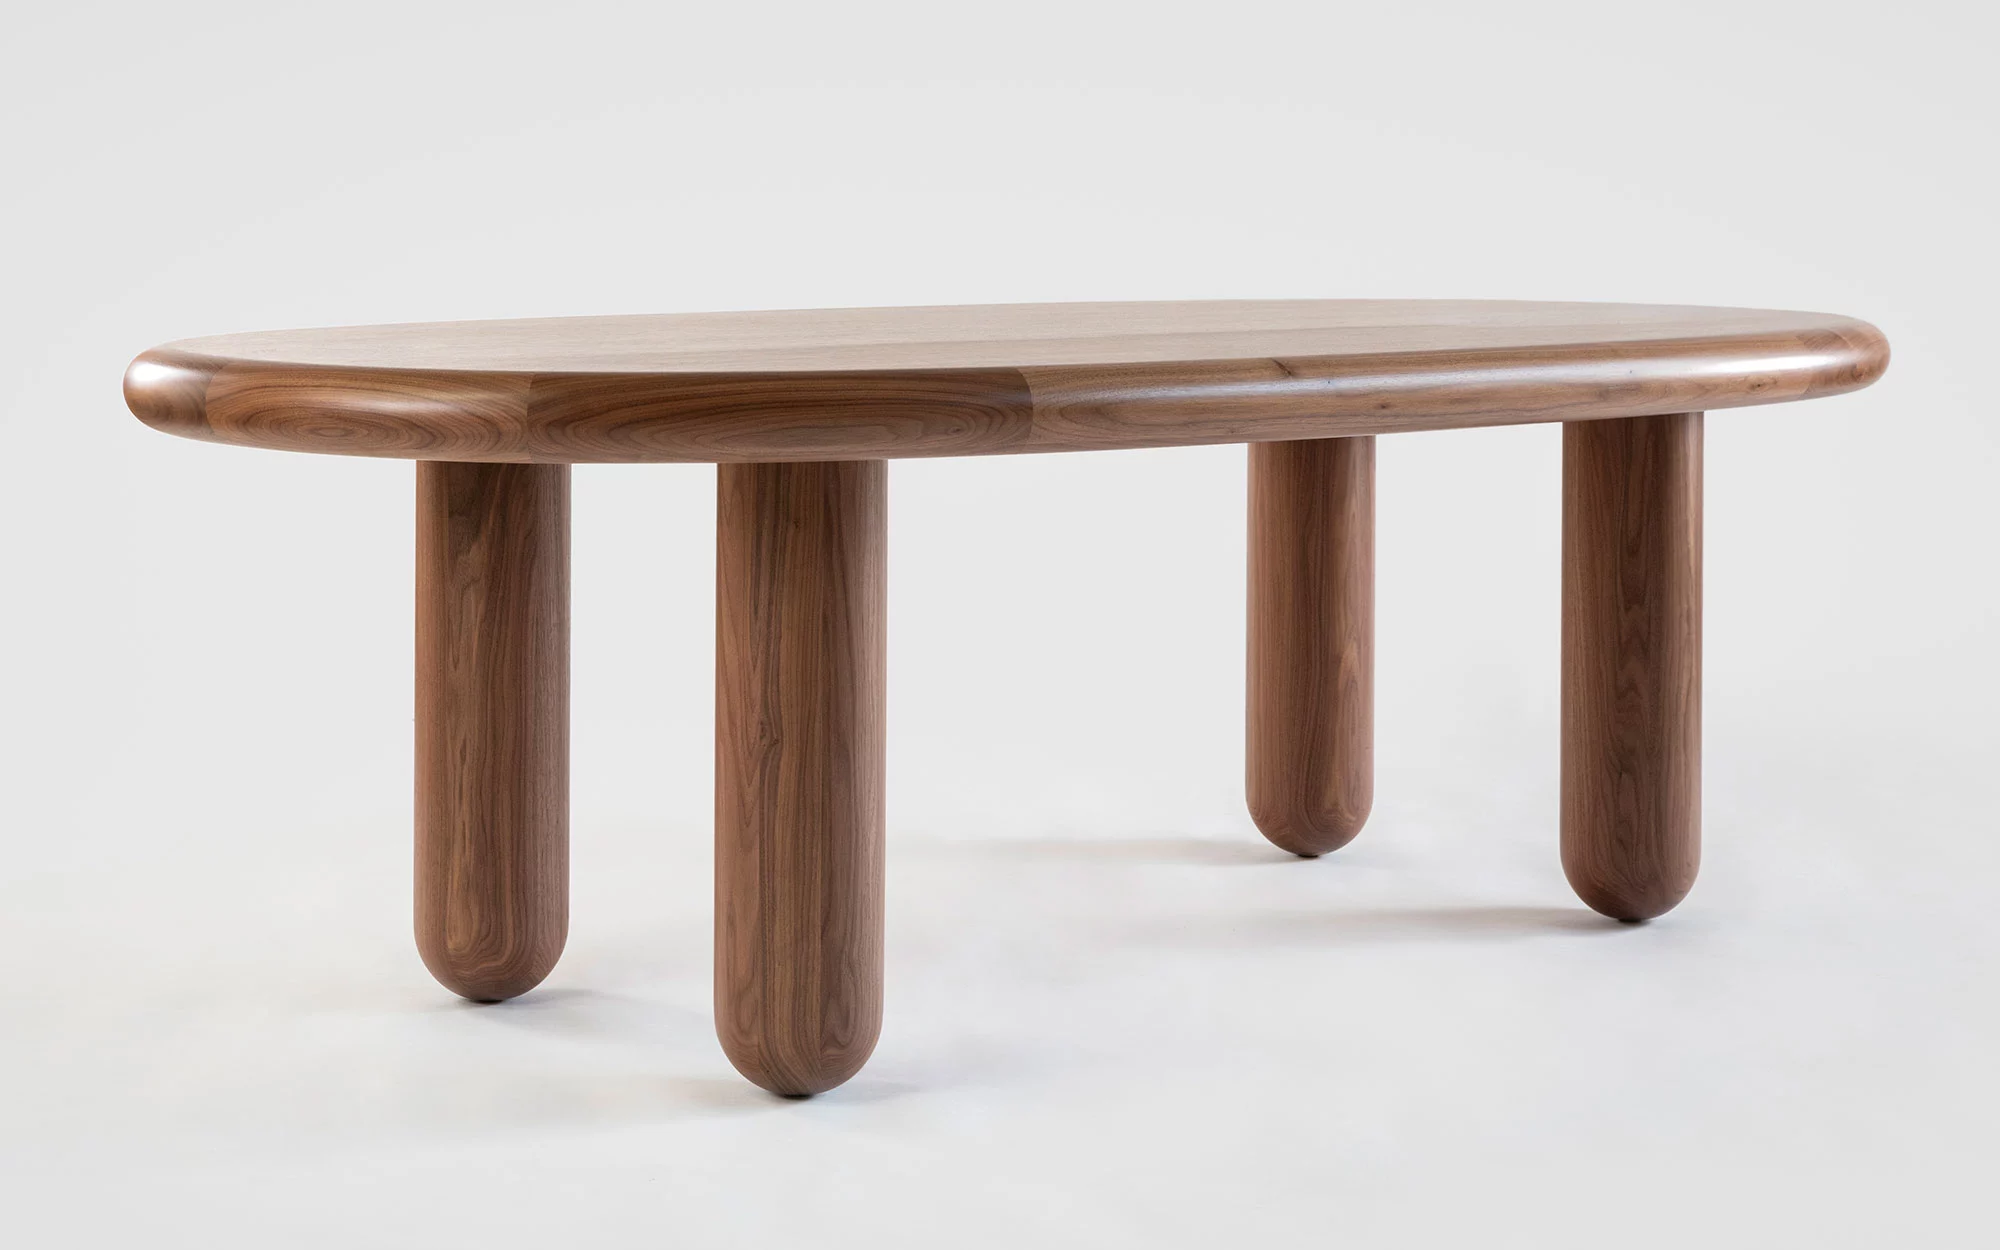 Organism oval table - Jaime Hayon - Storage - Galerie kreo